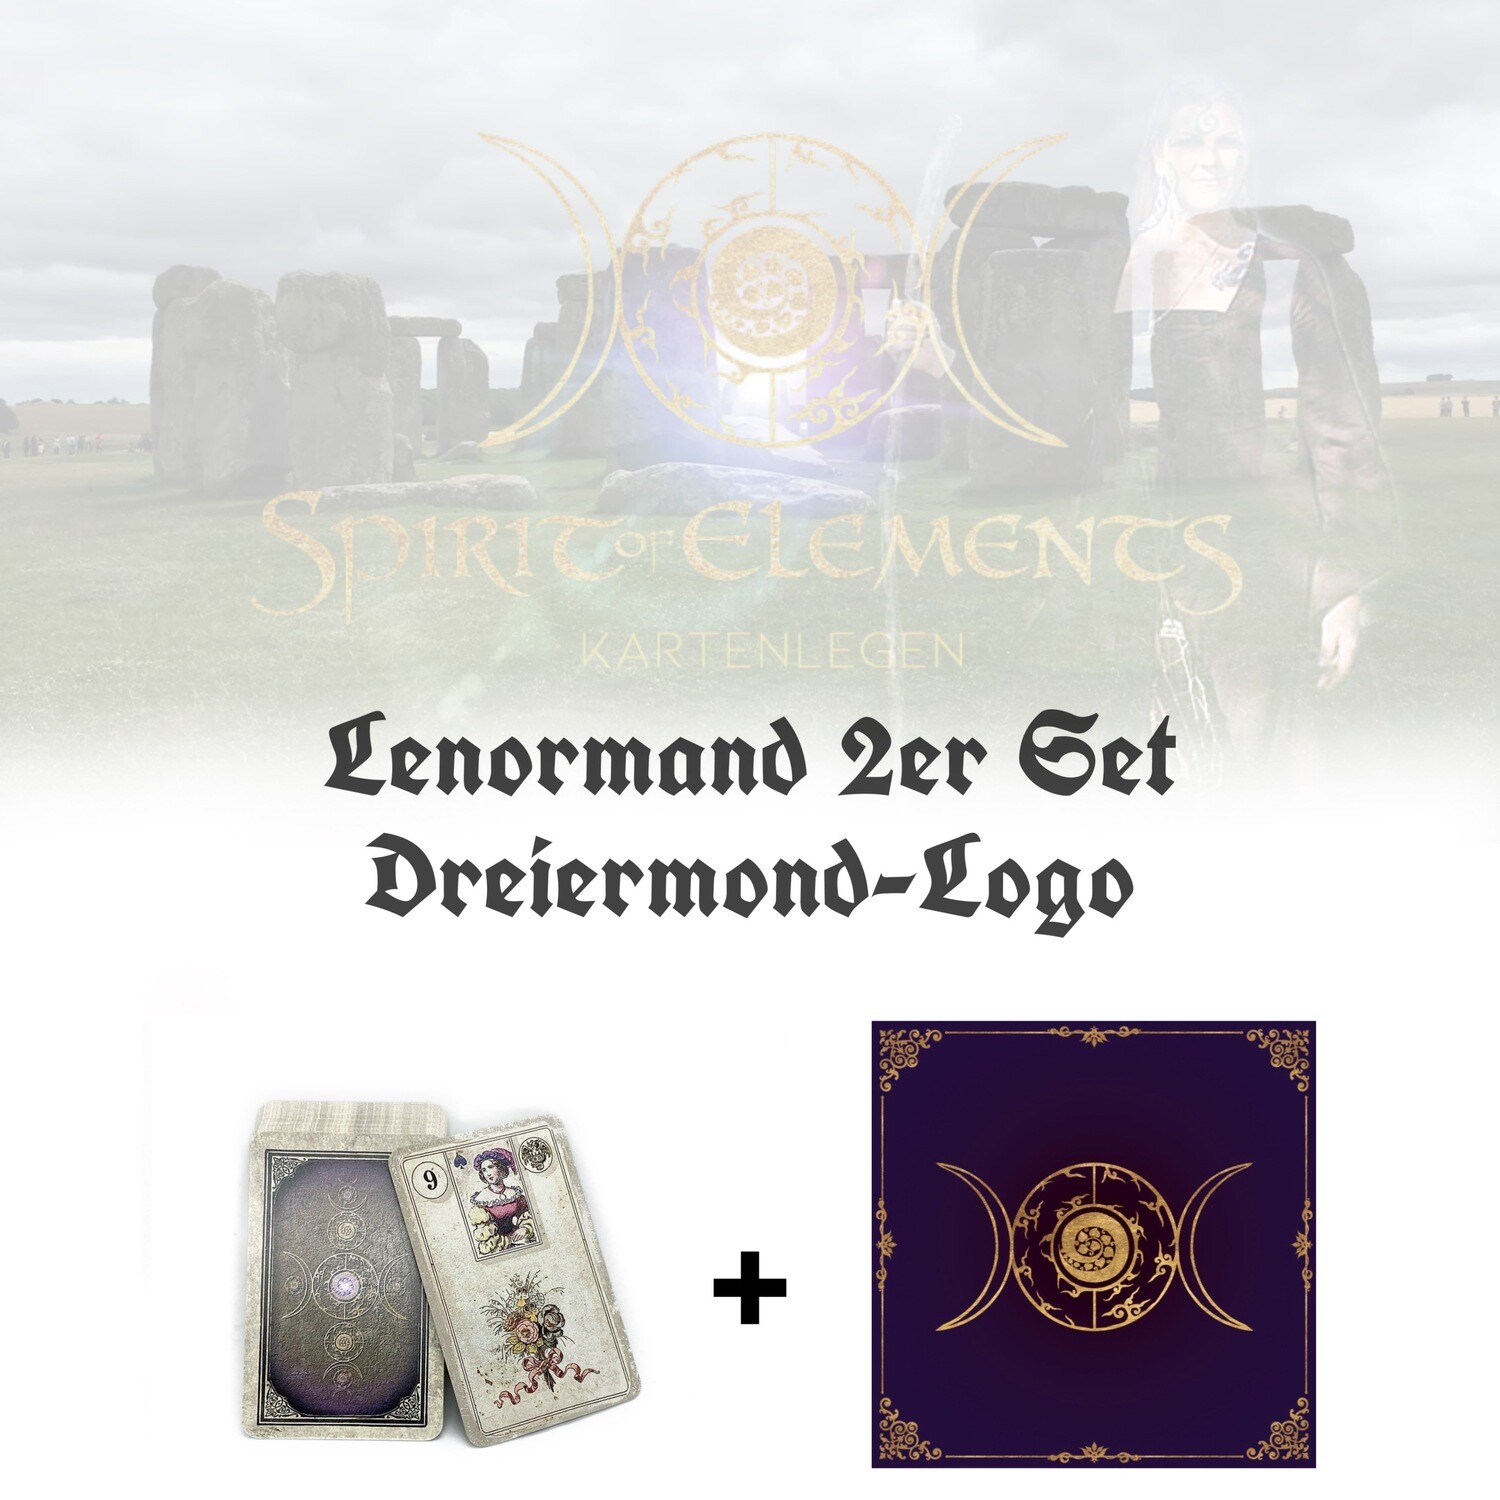 Lenormand 2er Set Dreiermond-Logo